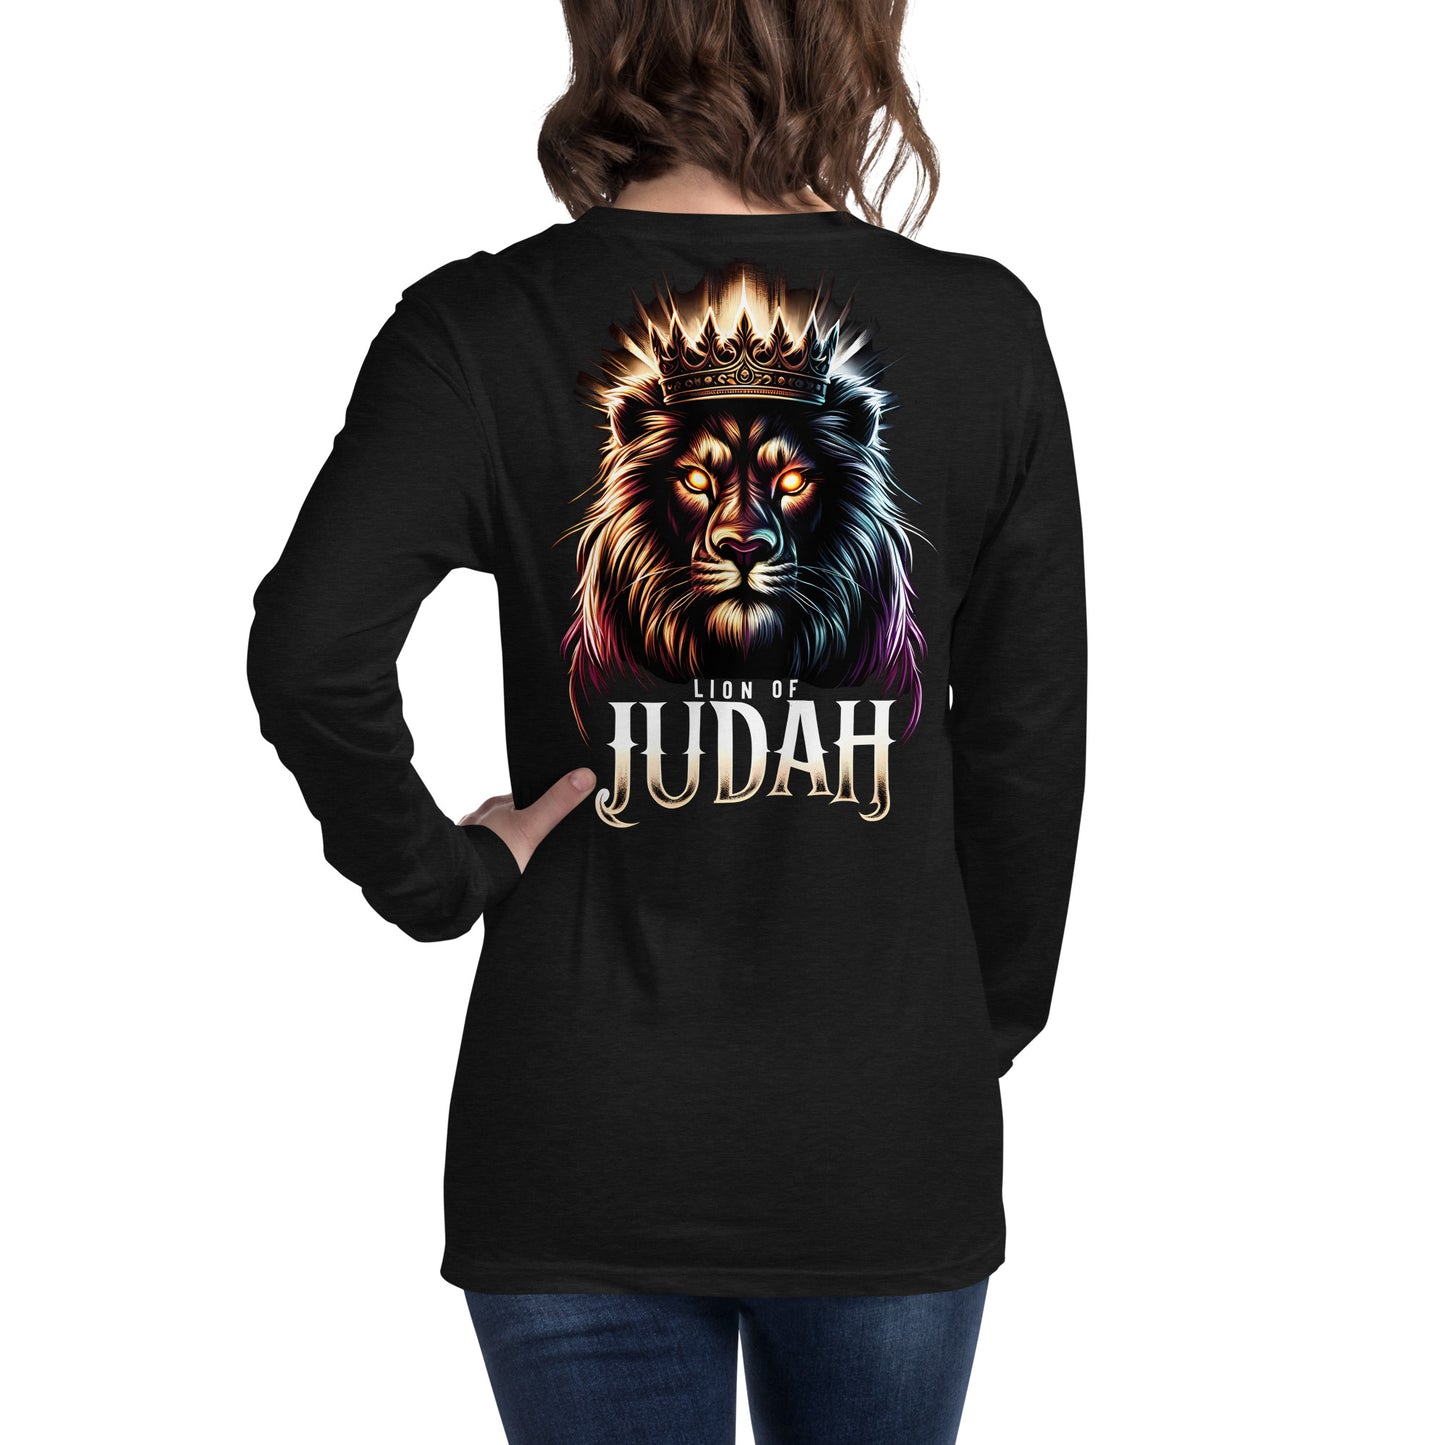 Lion of Judah Long Sleeve Tee